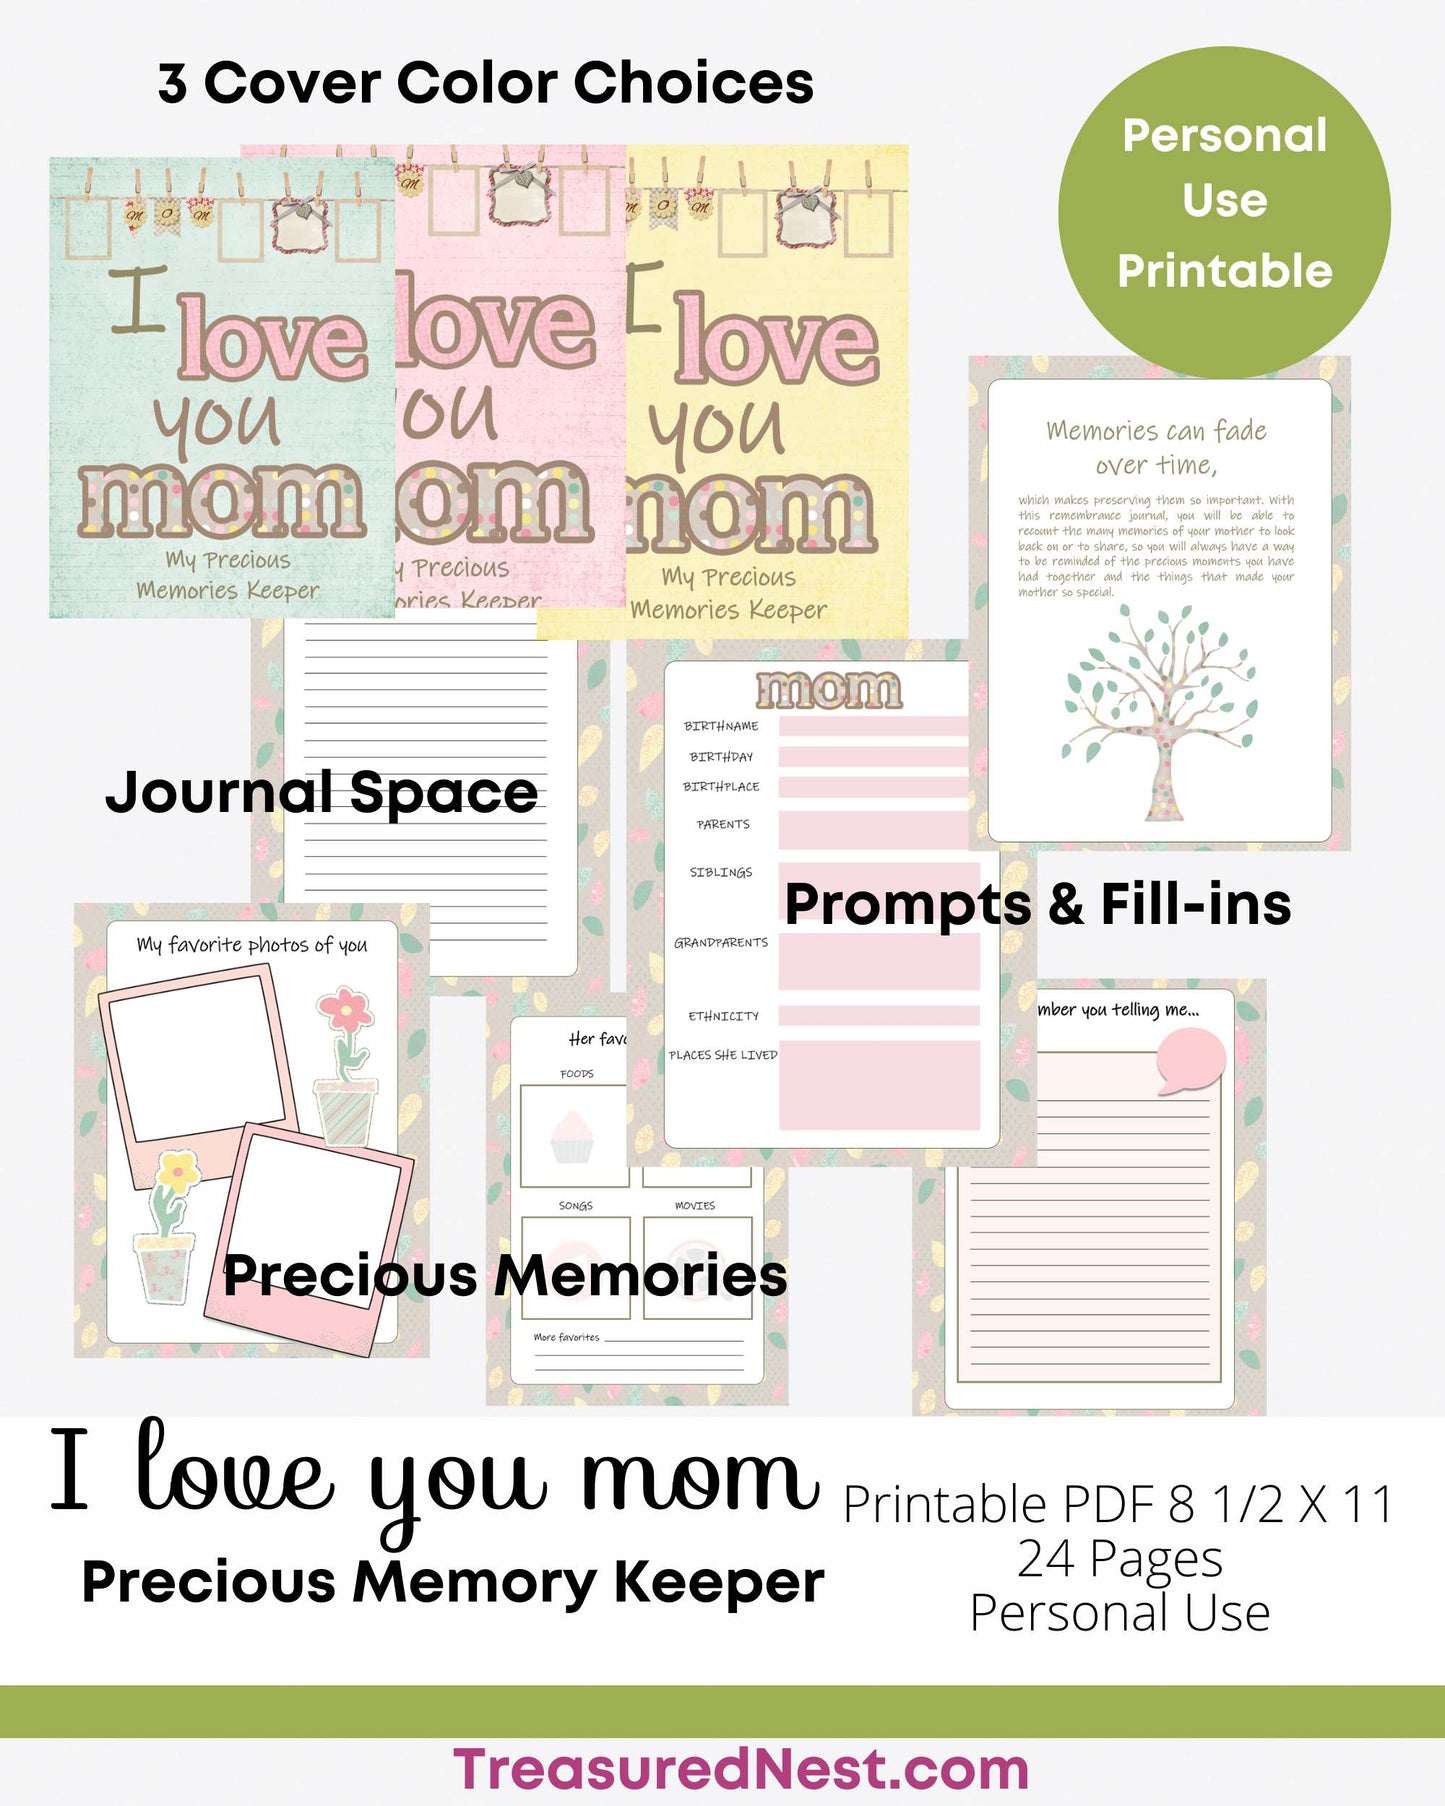 I Love You Mom - a Precious Memory Keeper